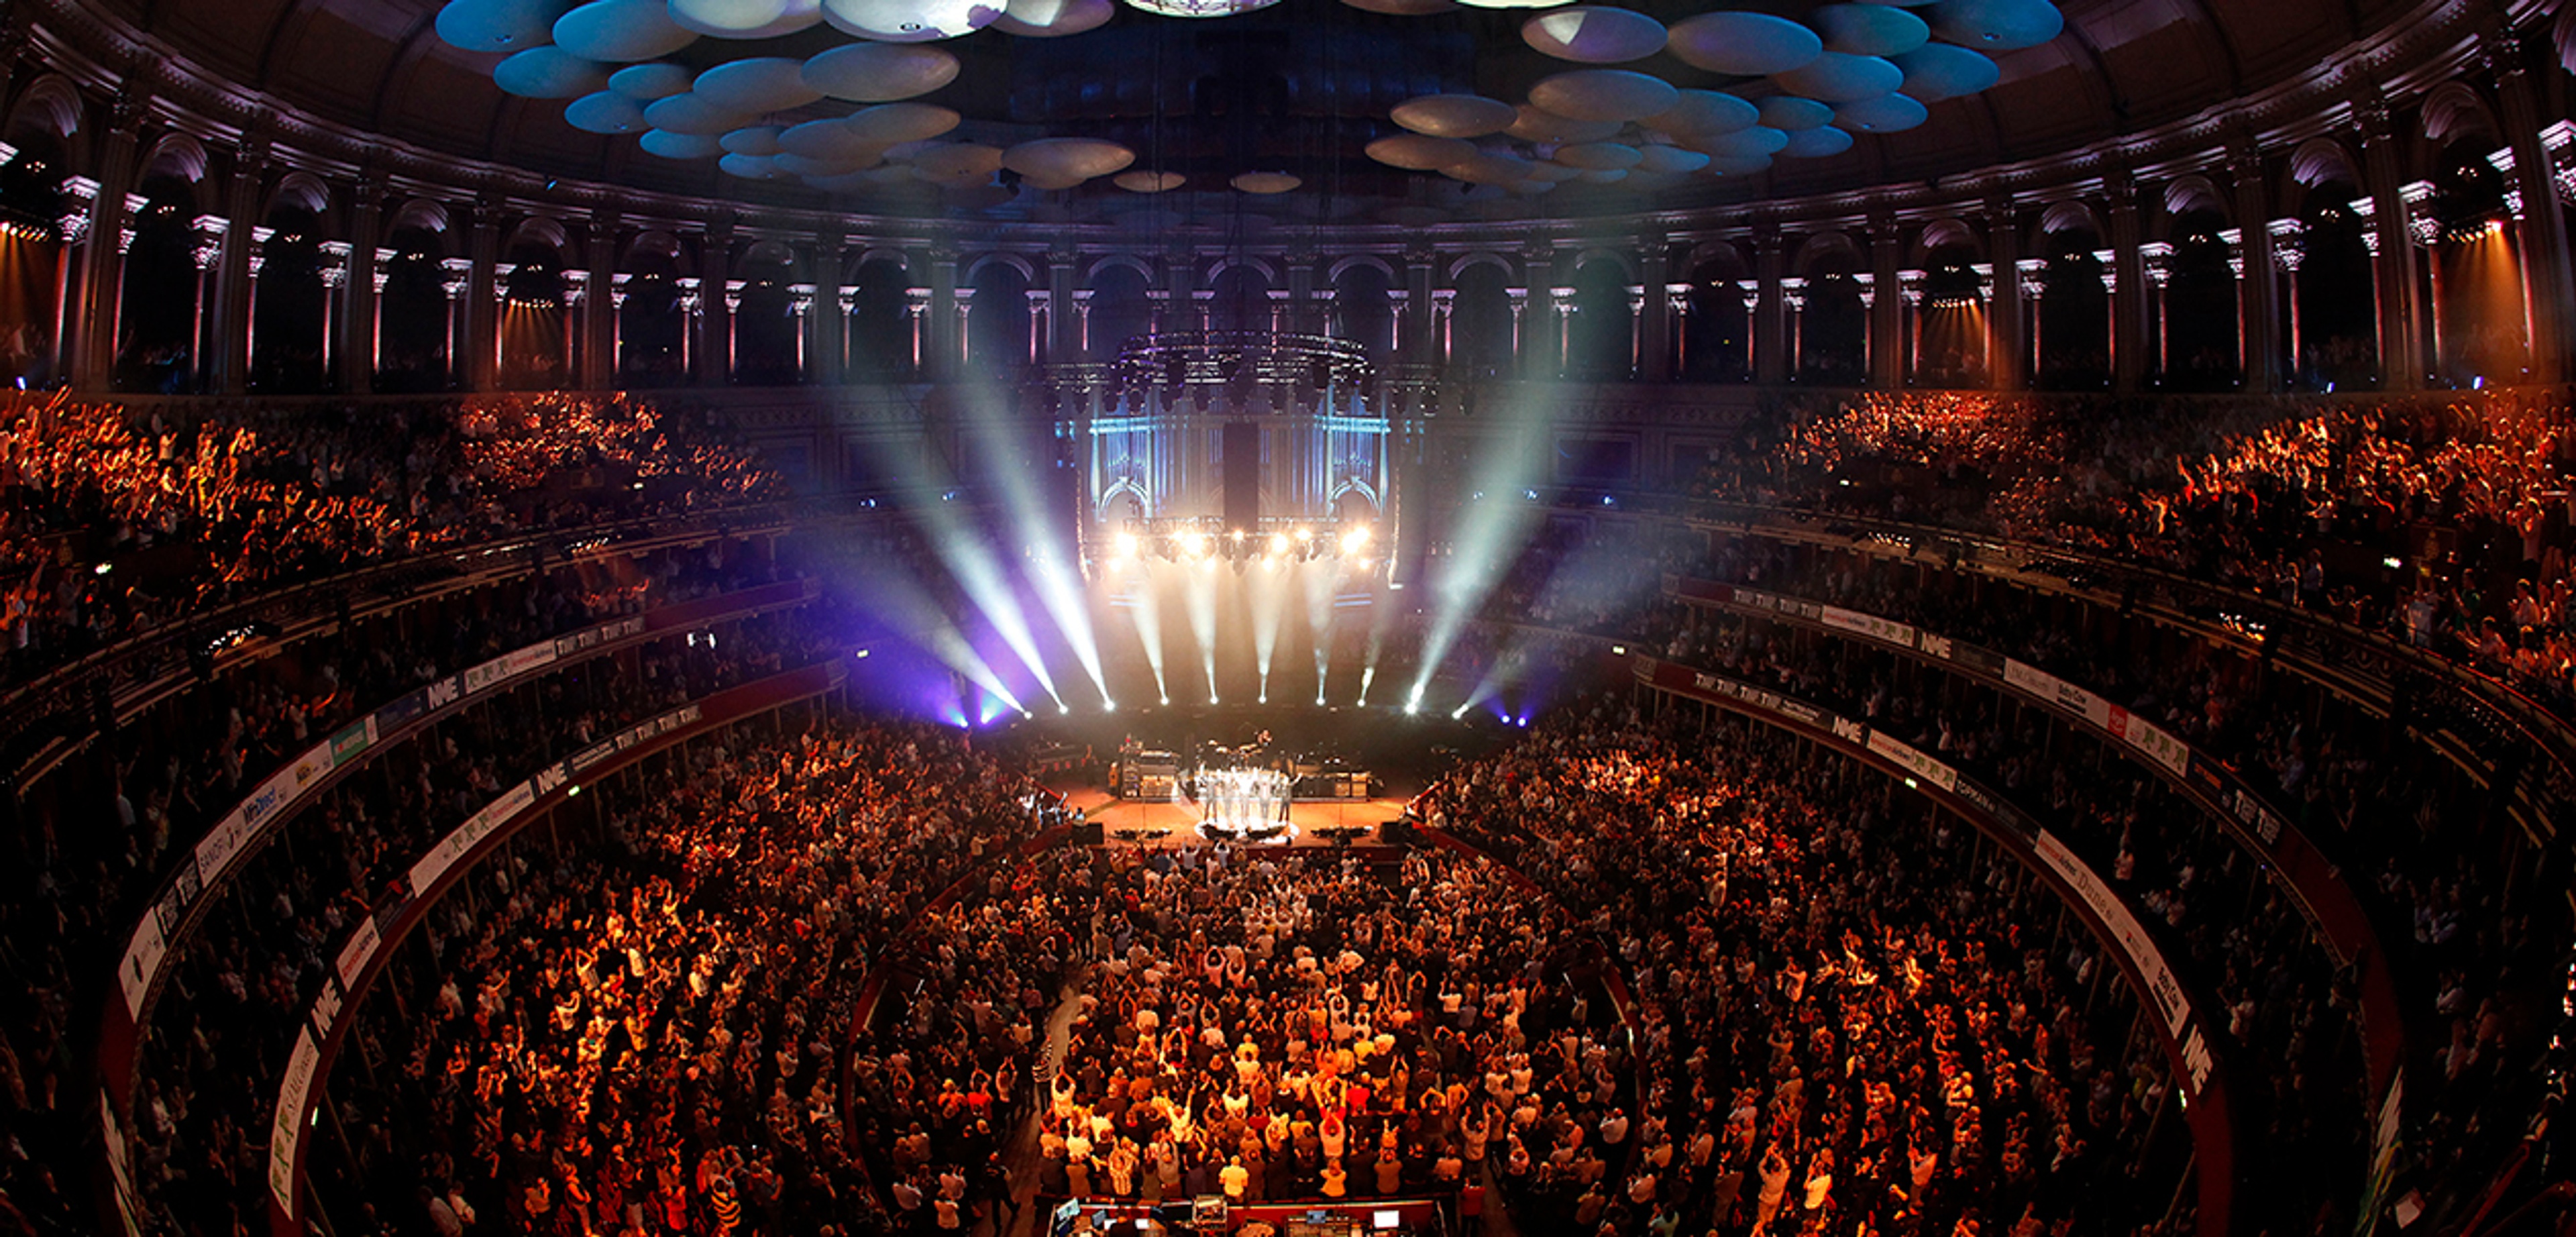 Paul performing at Royal Albert Hall in 2012